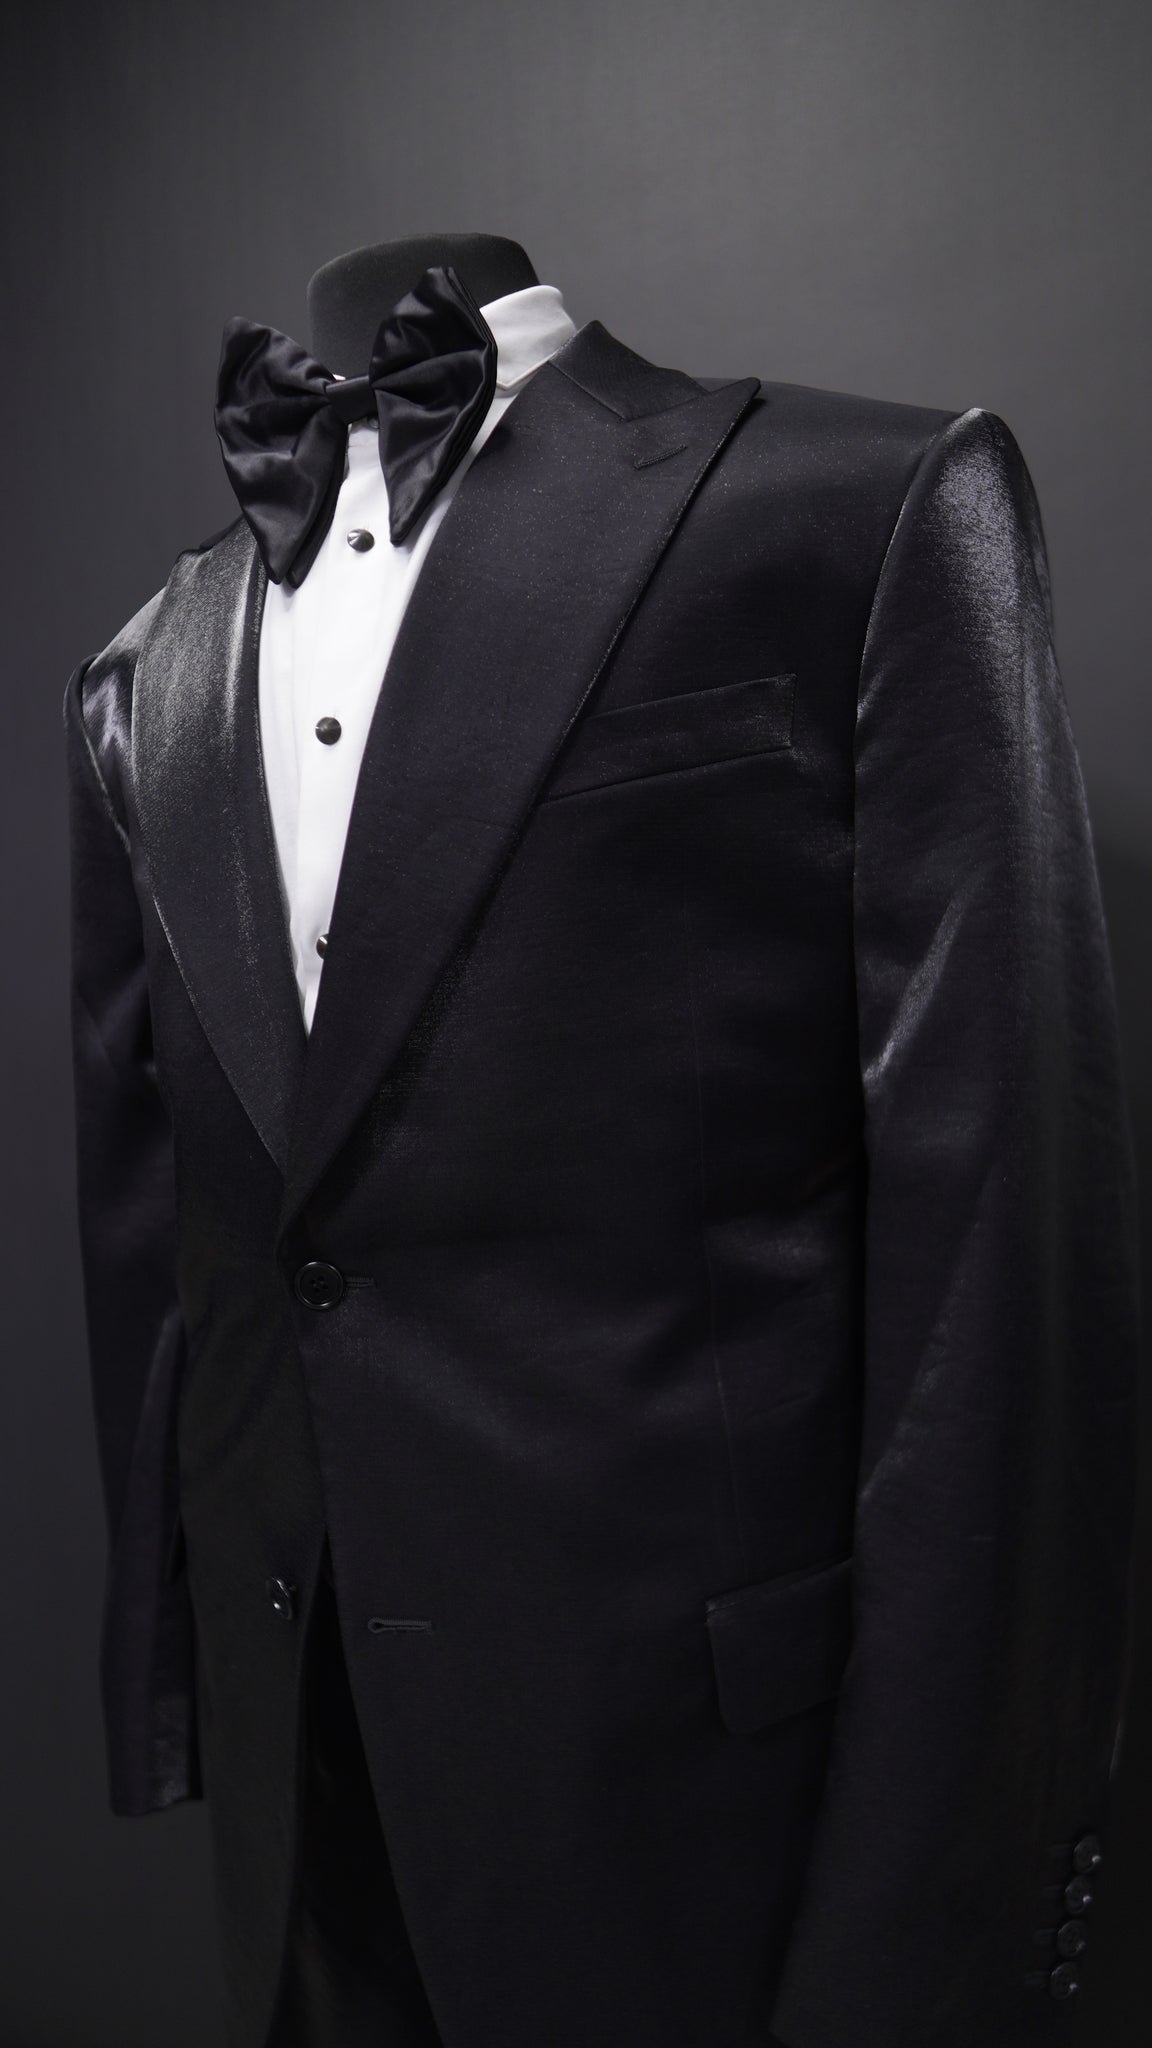 Justins Black Peak lapel  Suit